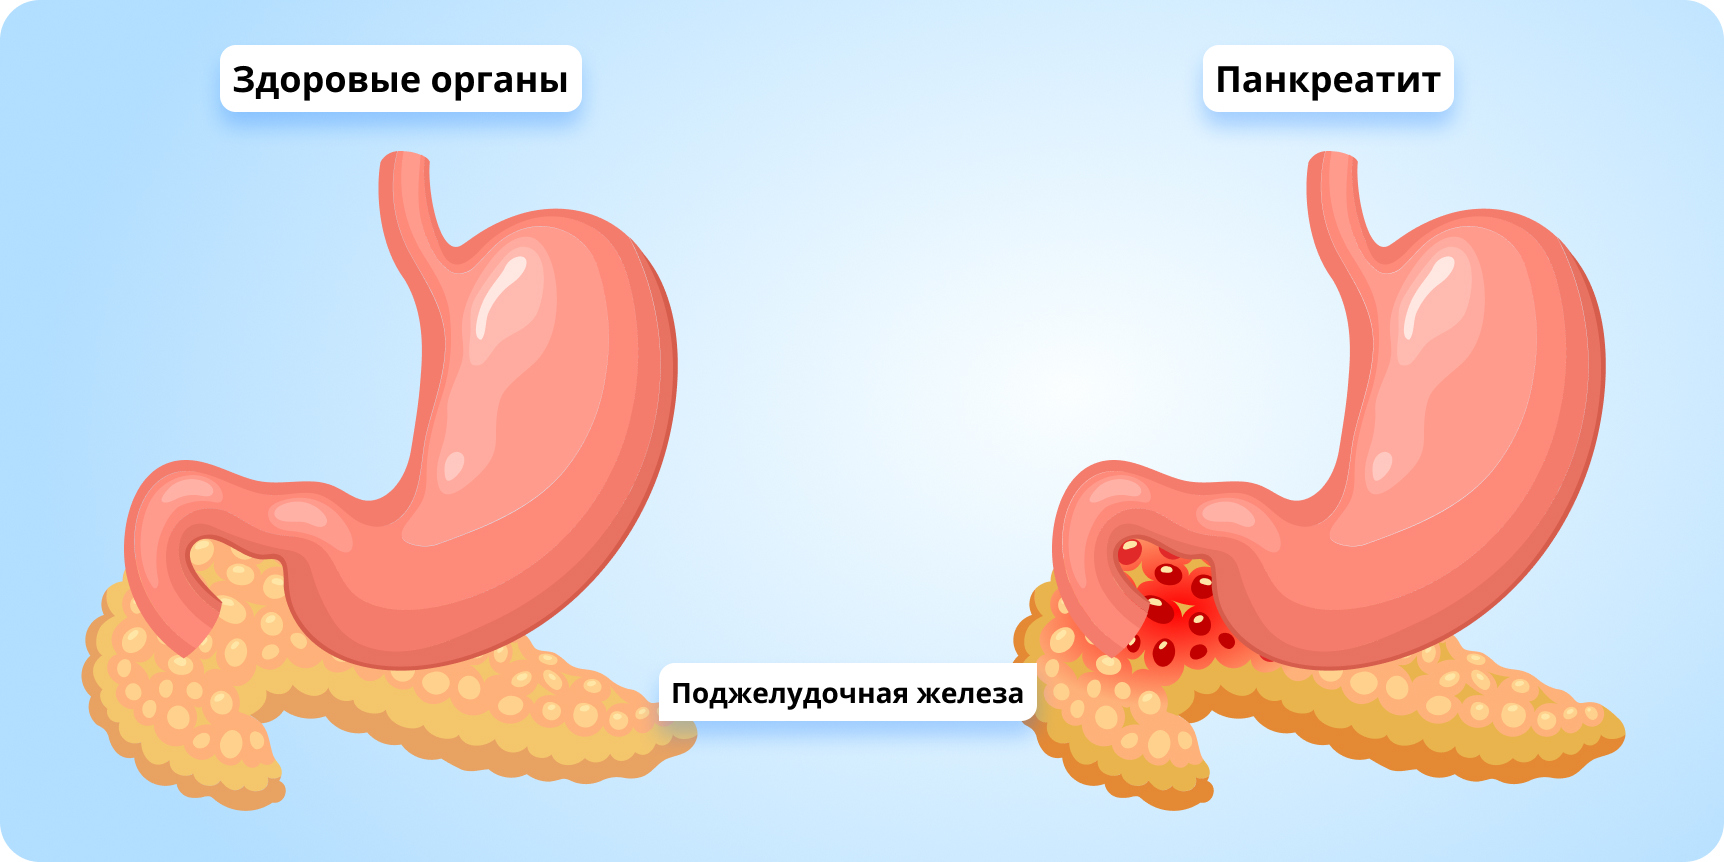 Co je užitečné pro pankreatitidu a cholecystitidu